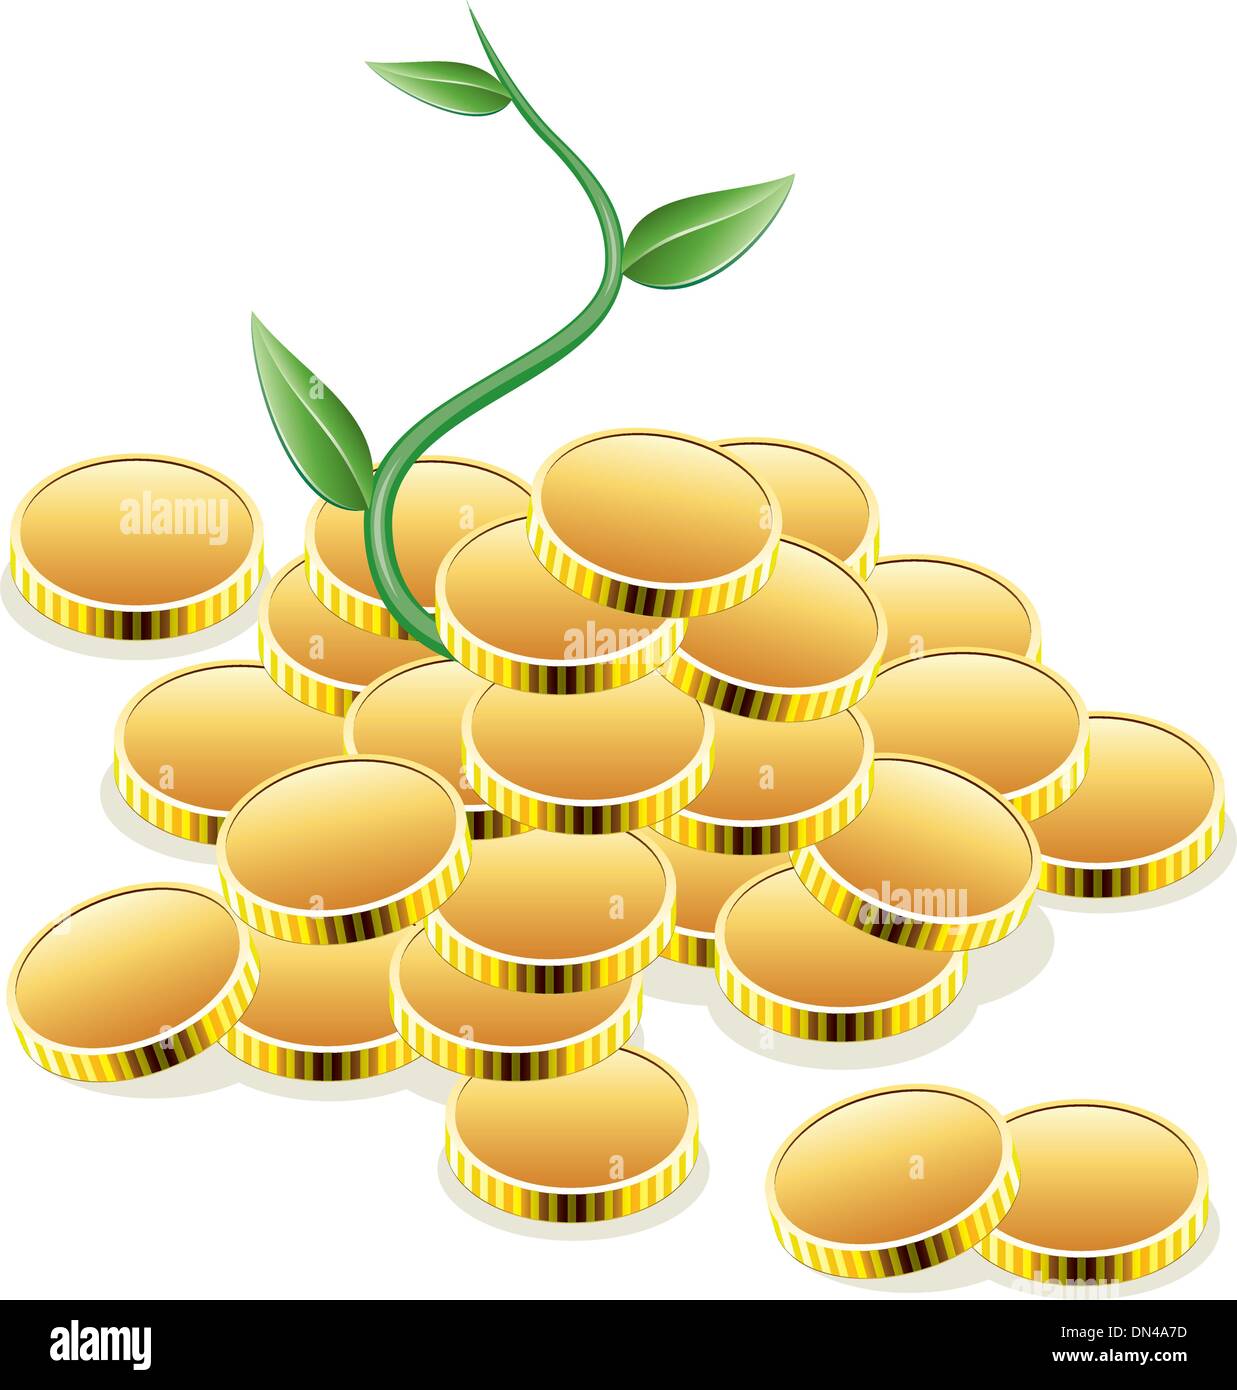 Vektor-goldene Münzen und grüne Pflanze Stock Vektor